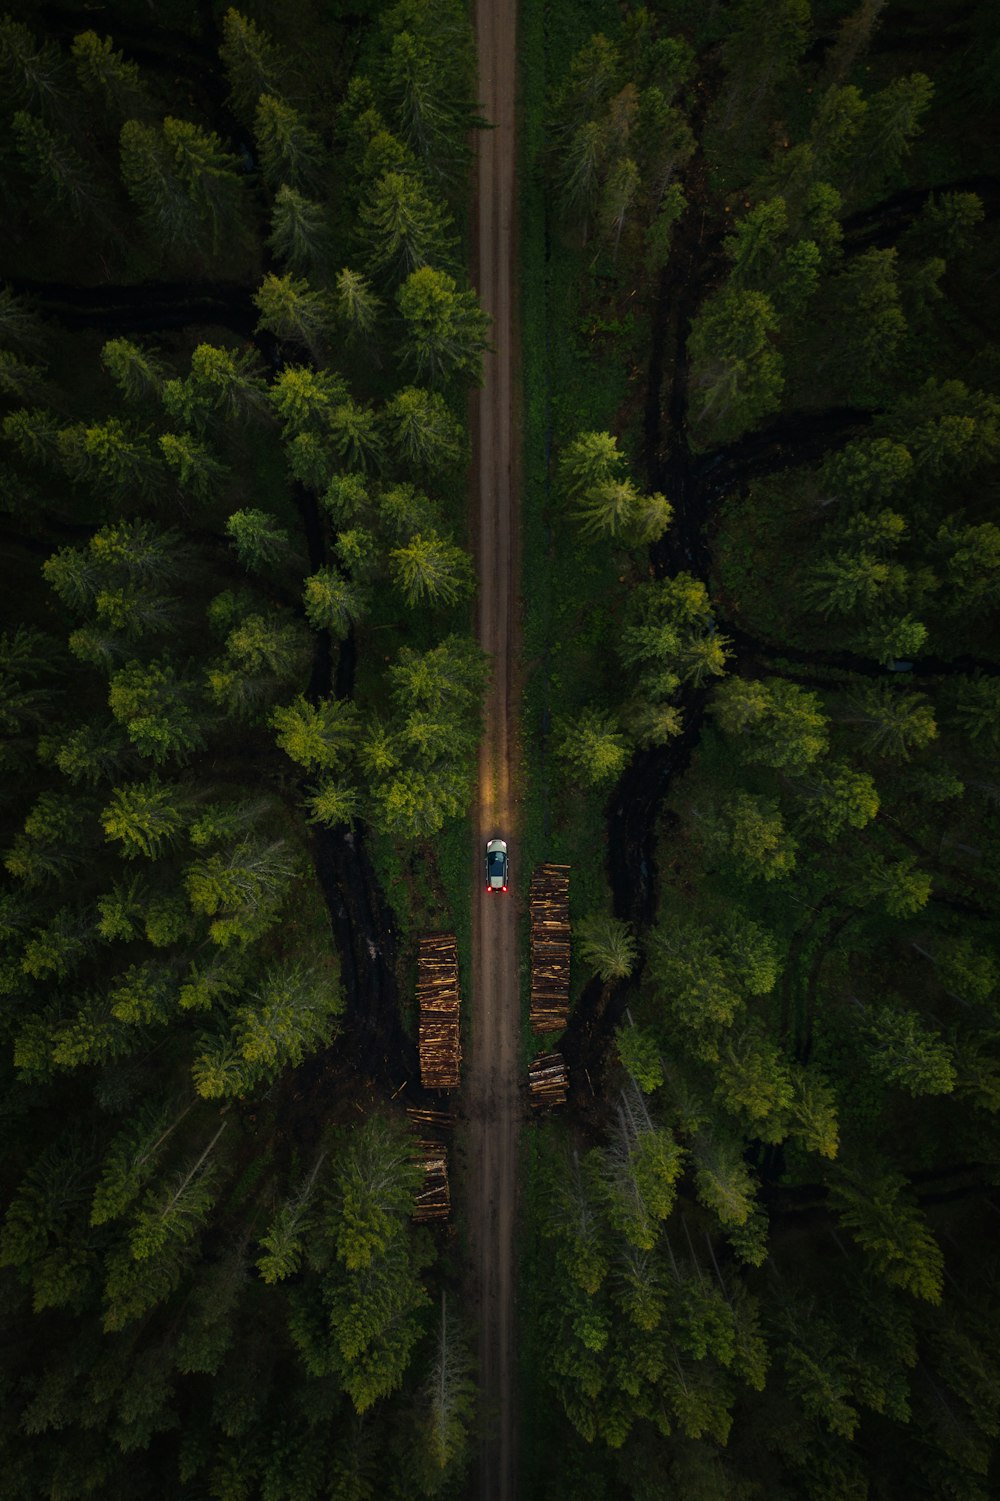 ponte di legno marrone in mezzo agli alberi verdi